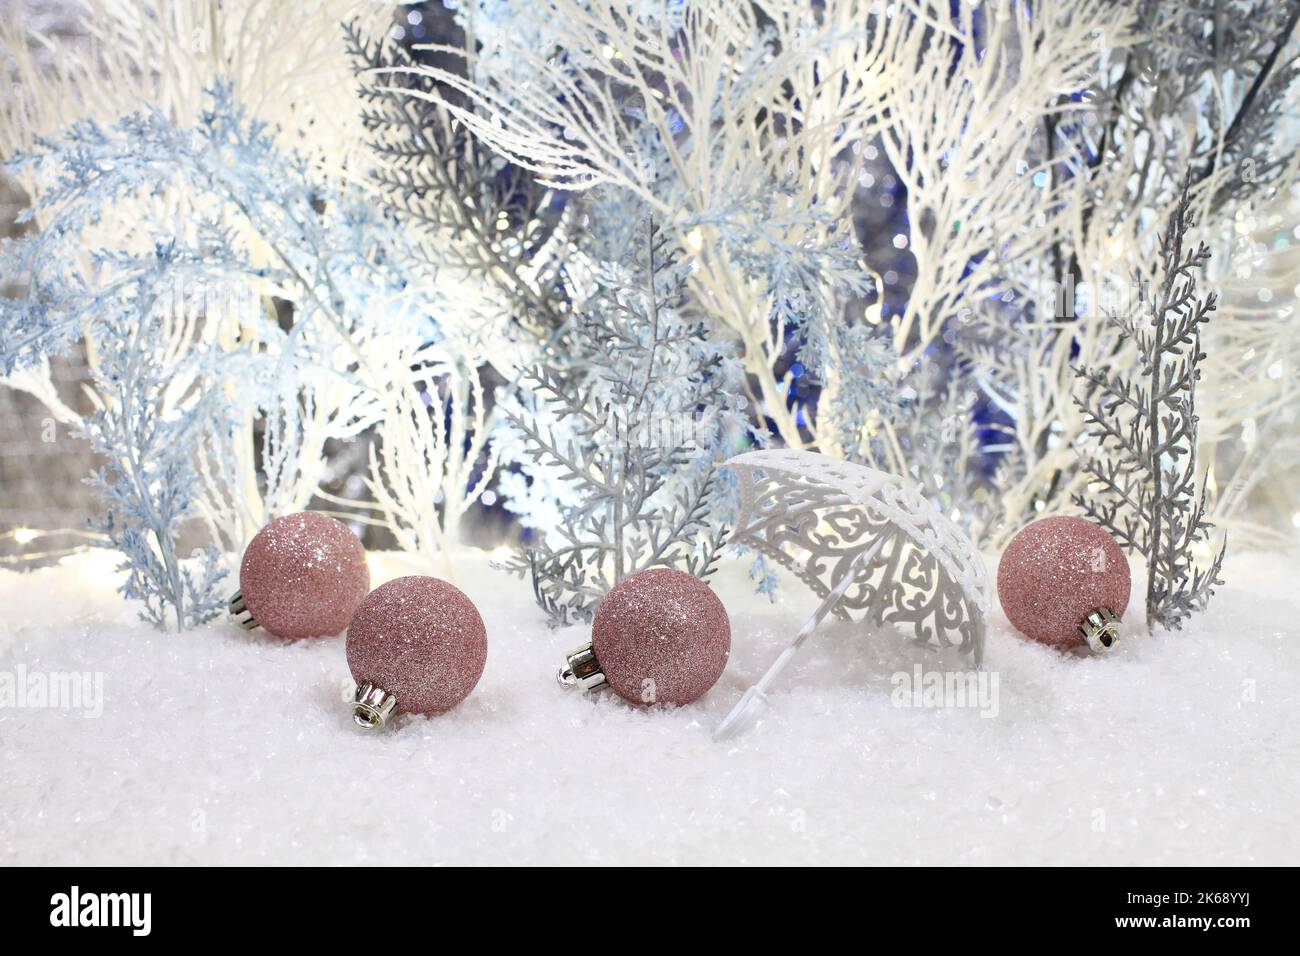 Les jouets de Noël se trouvent sur la neige artificielle sur fond d'arbres artificiels bleus et blancs. Gros plan. Prise de vue en studio de nuit. Banque D'Images